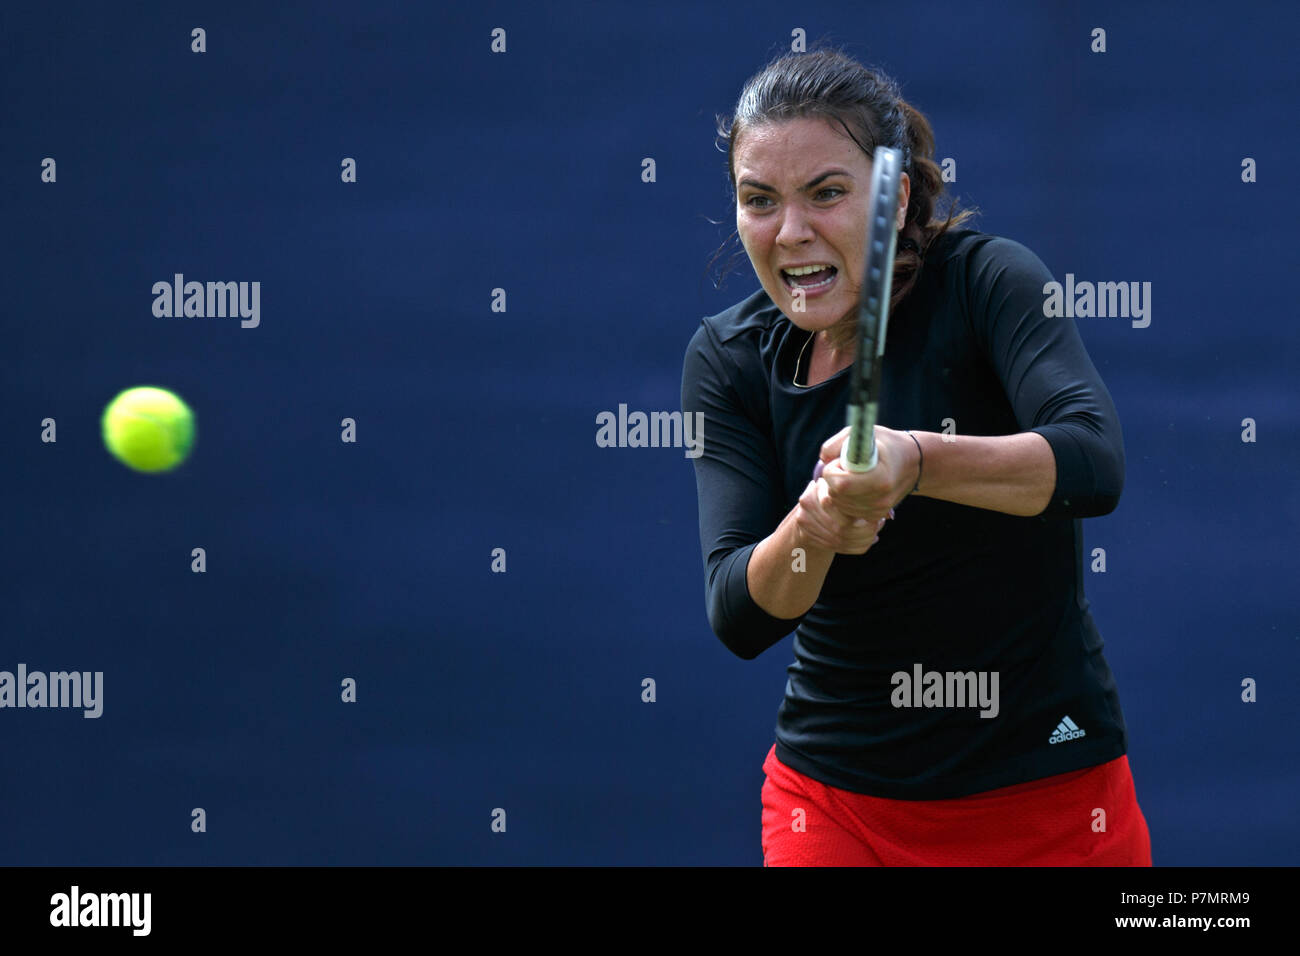 Elena-Gabriela Ruse joue un coup au cours d'un match en 2018. Ruse est une joueuse de tennis de la Roumanie. Banque D'Images